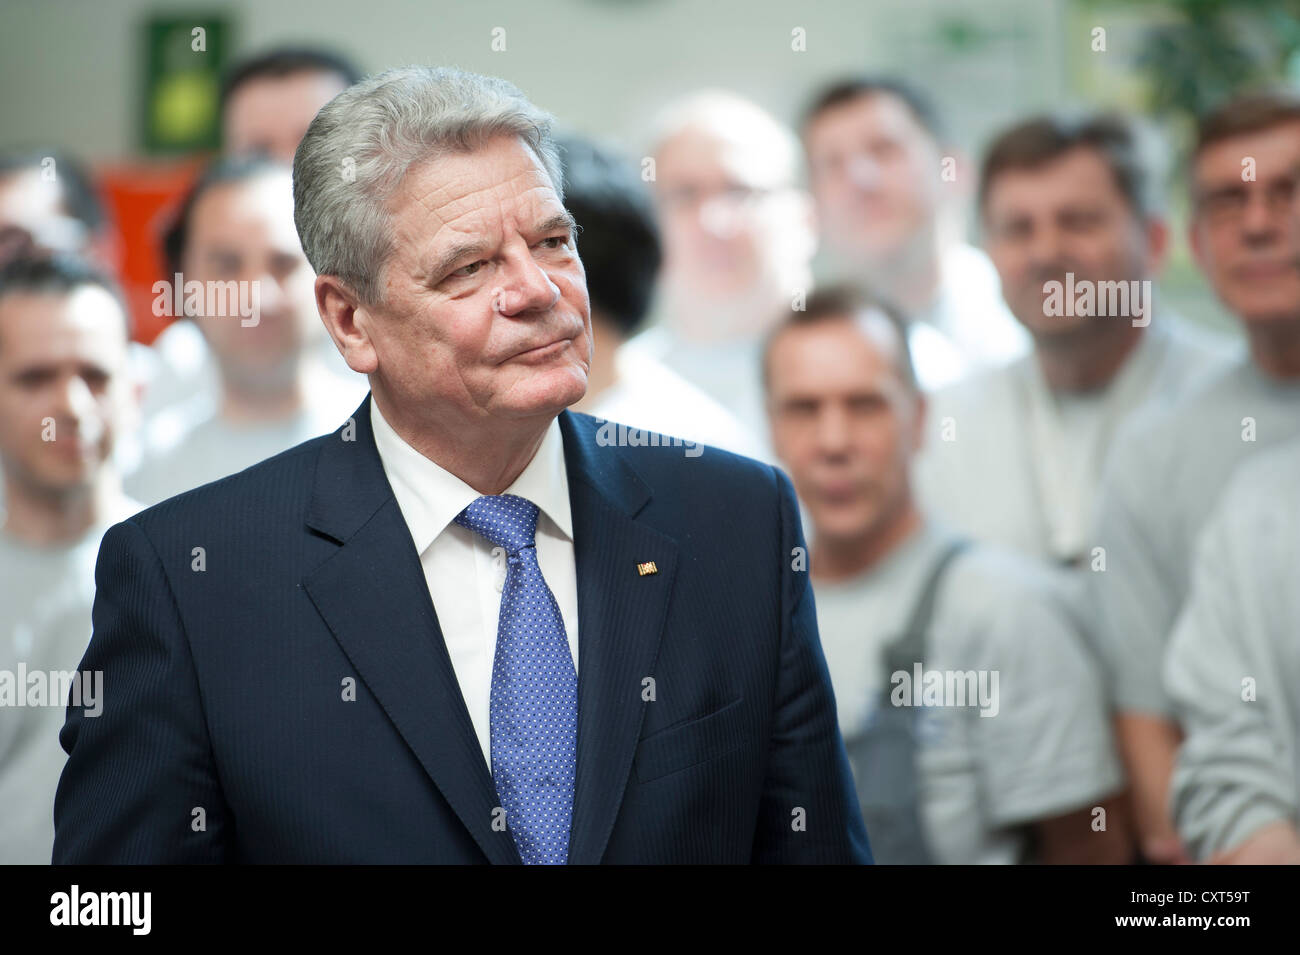 Visita inaugurale del presidente federale Joachim Gauck e la sua compagna Daniela Schadt nel Baden-Wuerttemberg, visita aziendale alla Ritter Foto Stock